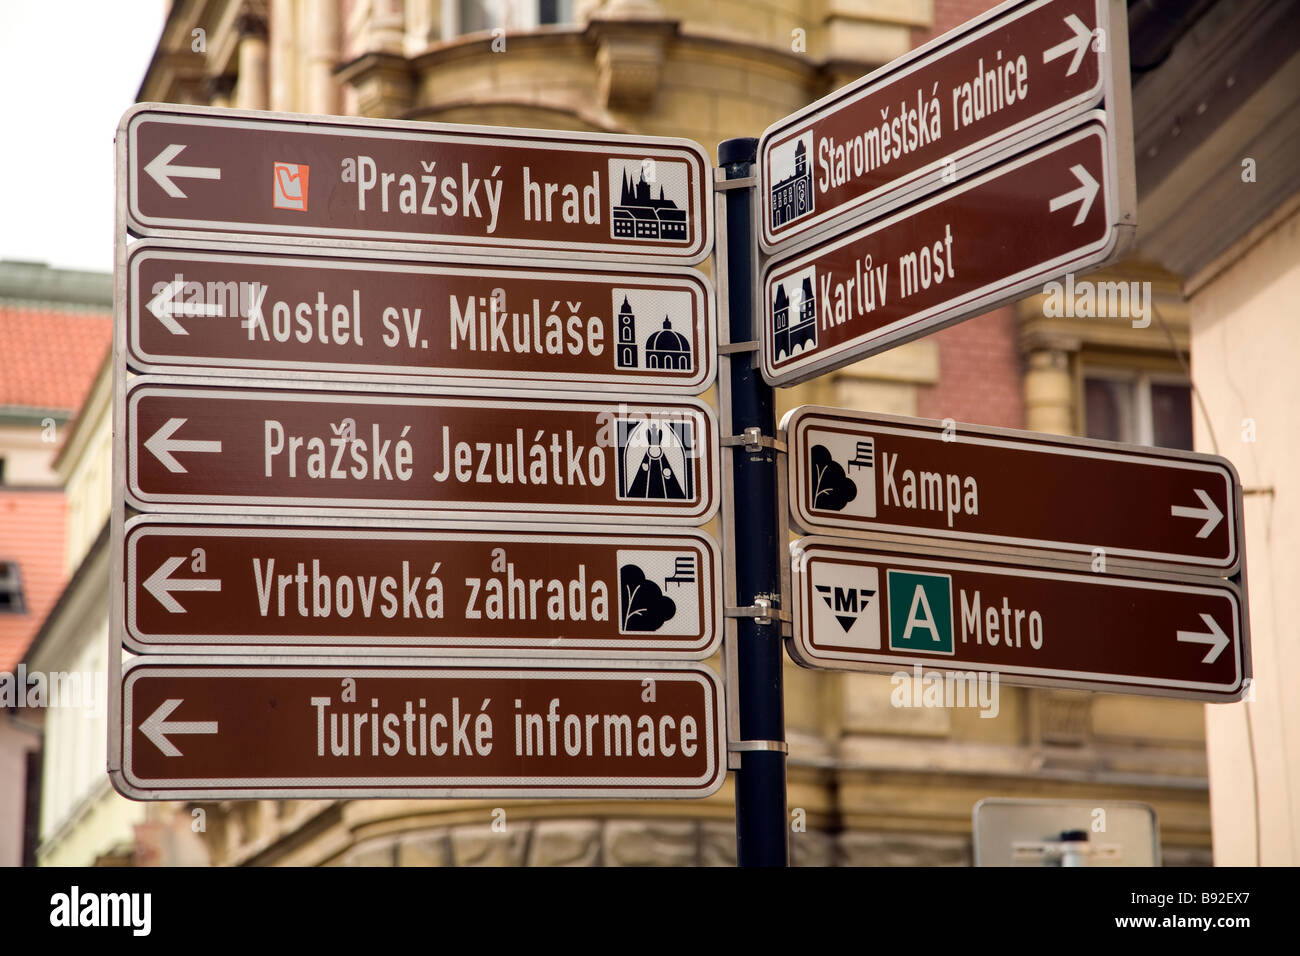 Beliebte Sehenswürdigkeiten in Prag Tschechische Republik zeigen Straßenschild Stockfoto